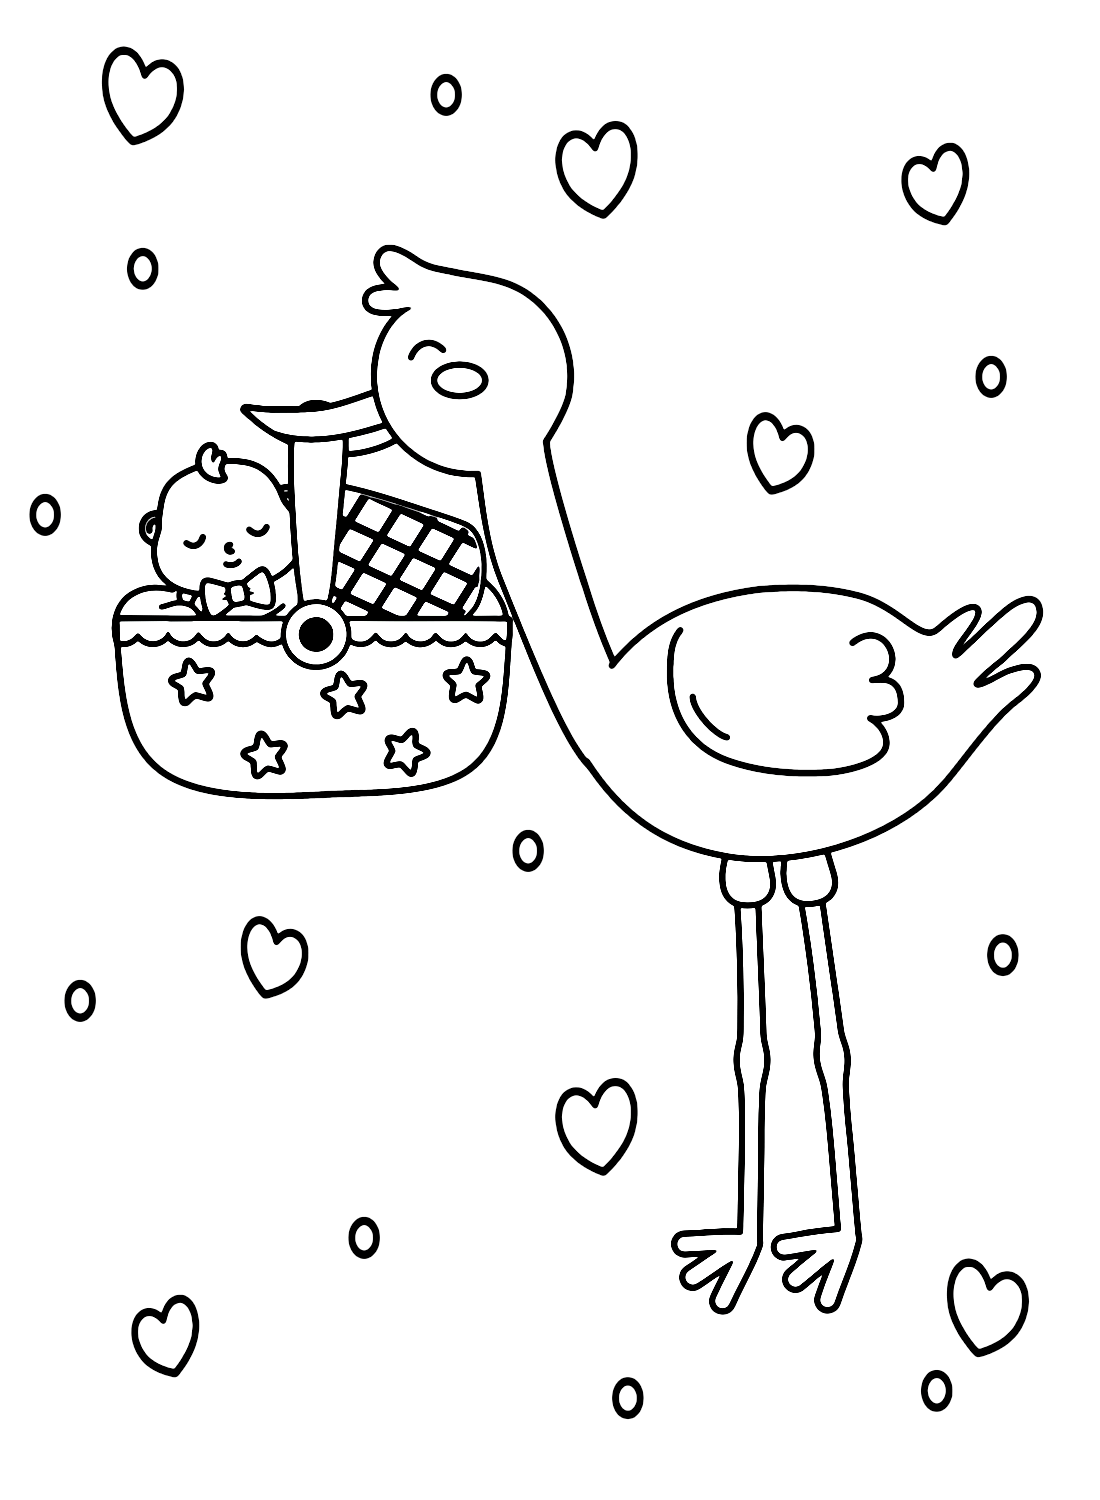 Storch mit Baby im Korb von Stork